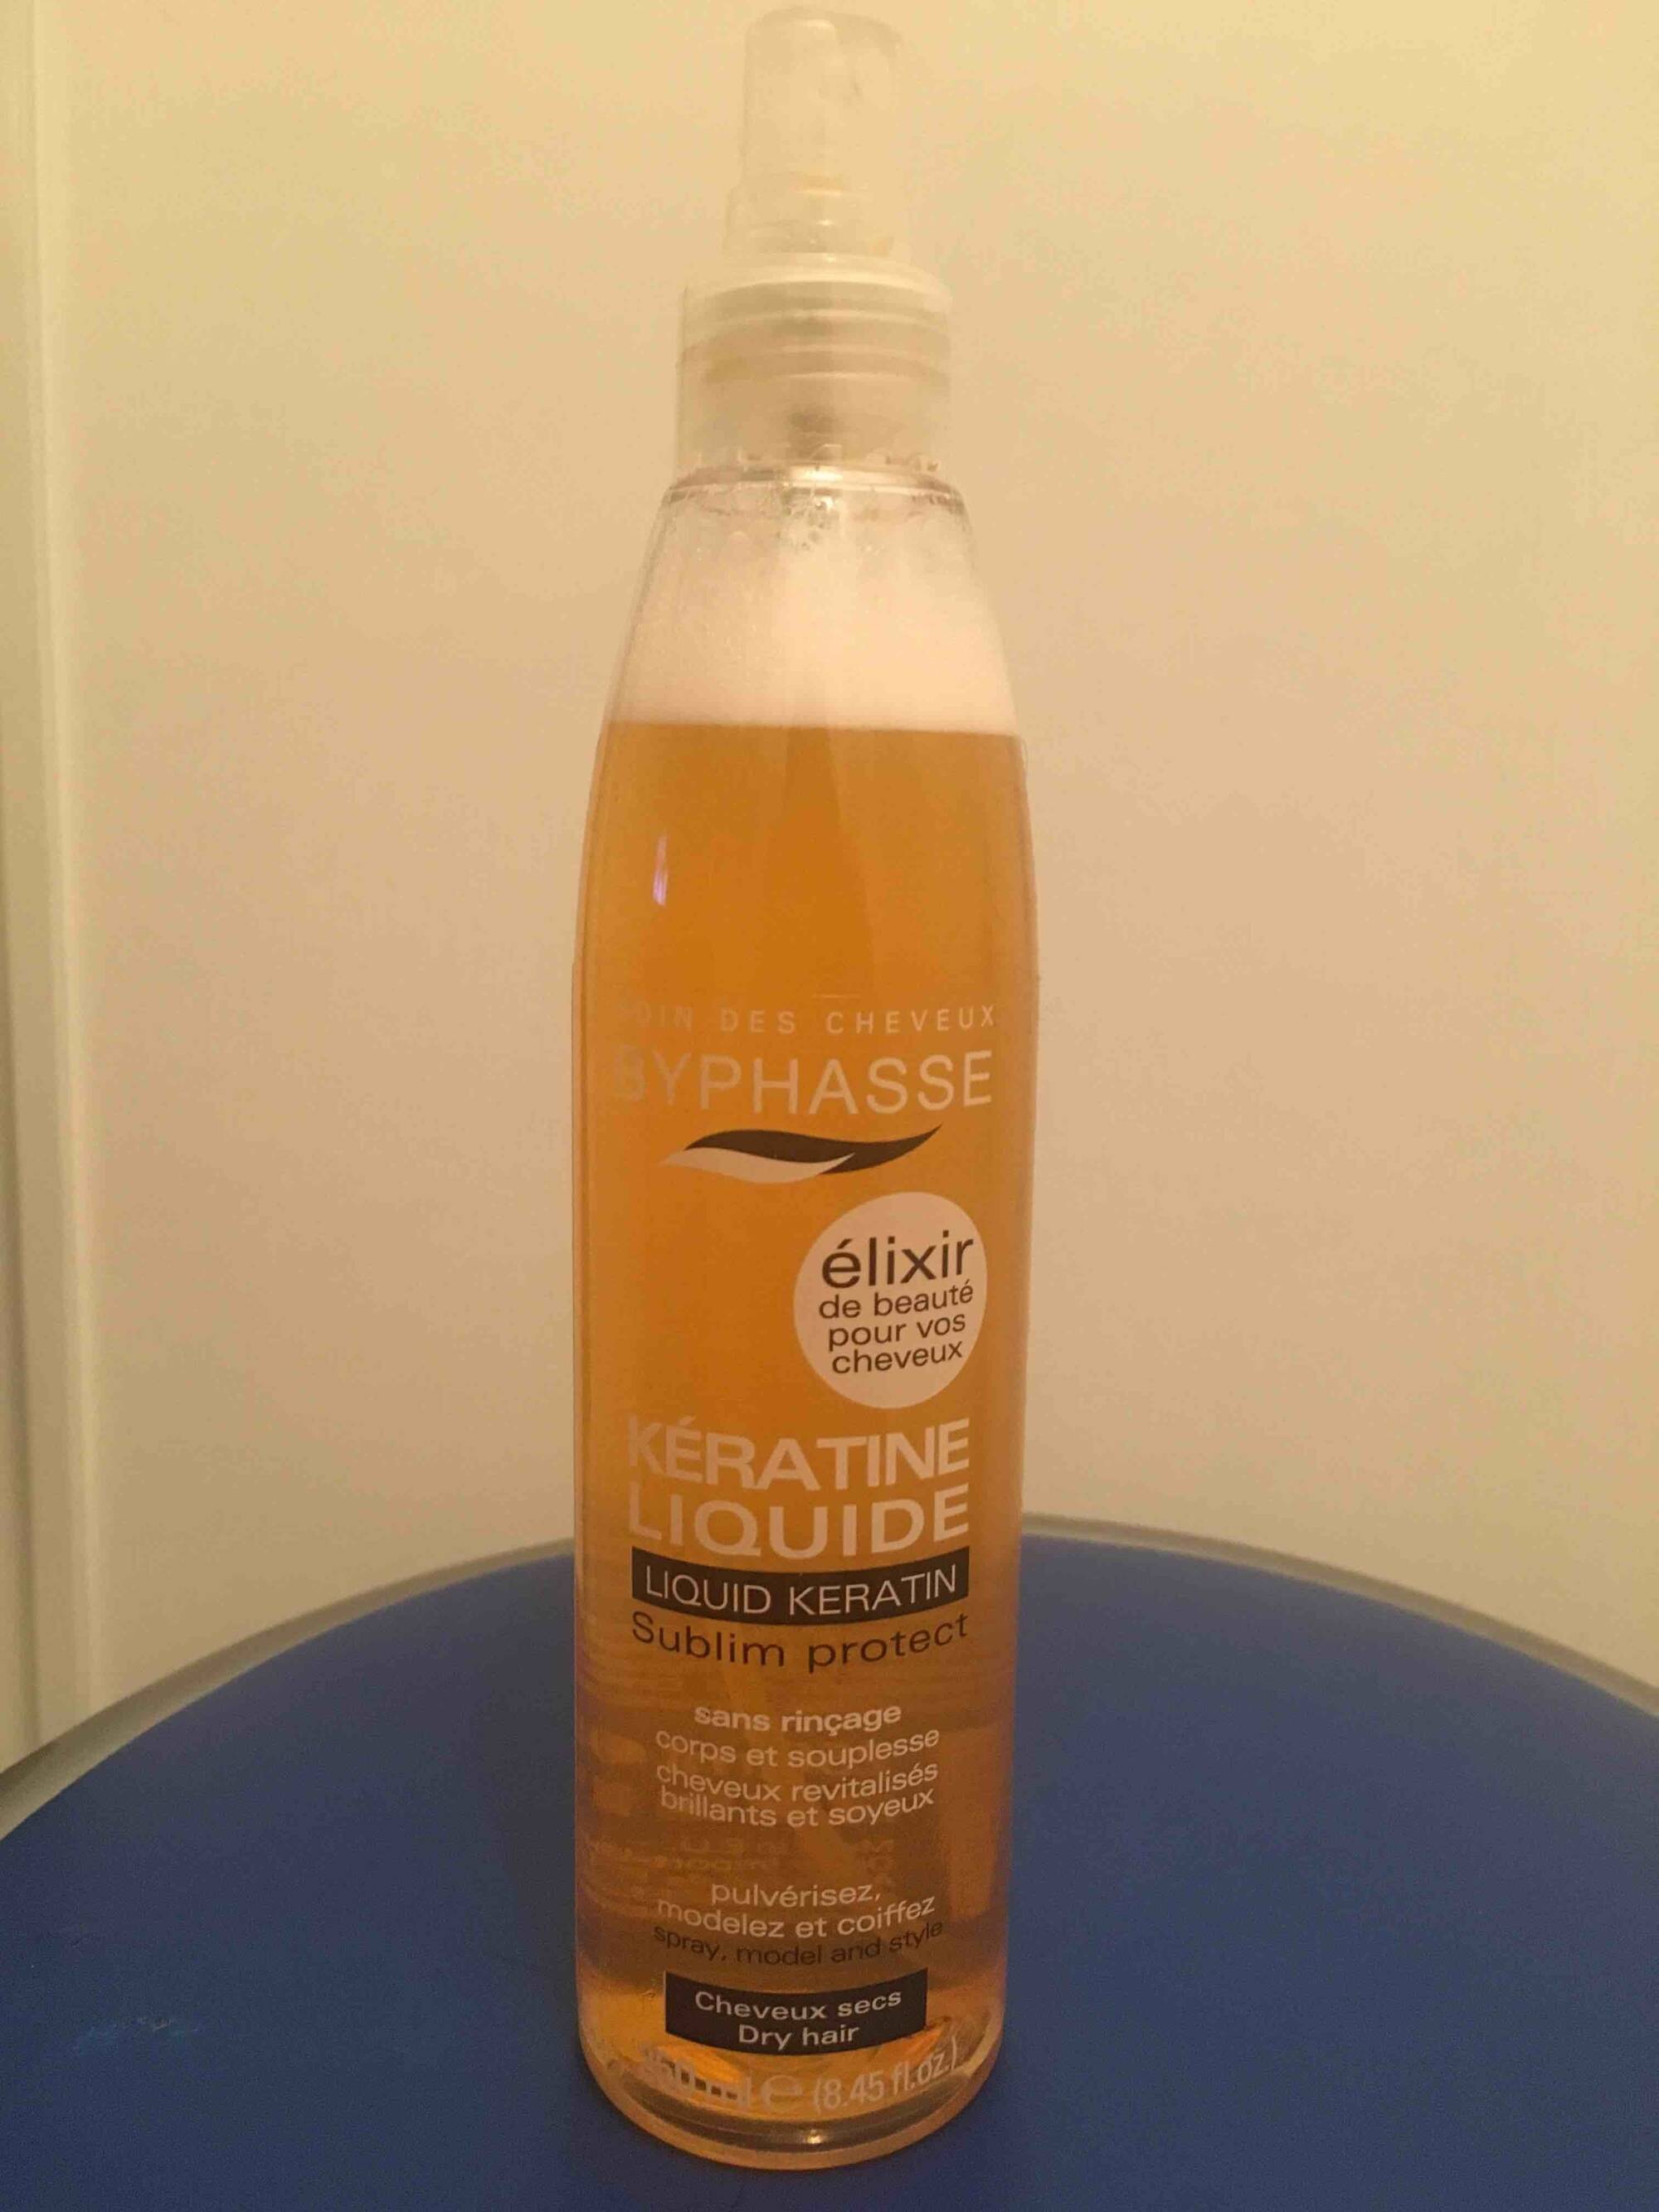 BYPHASSE - Kératine liquide - Spray pour cheveux secs